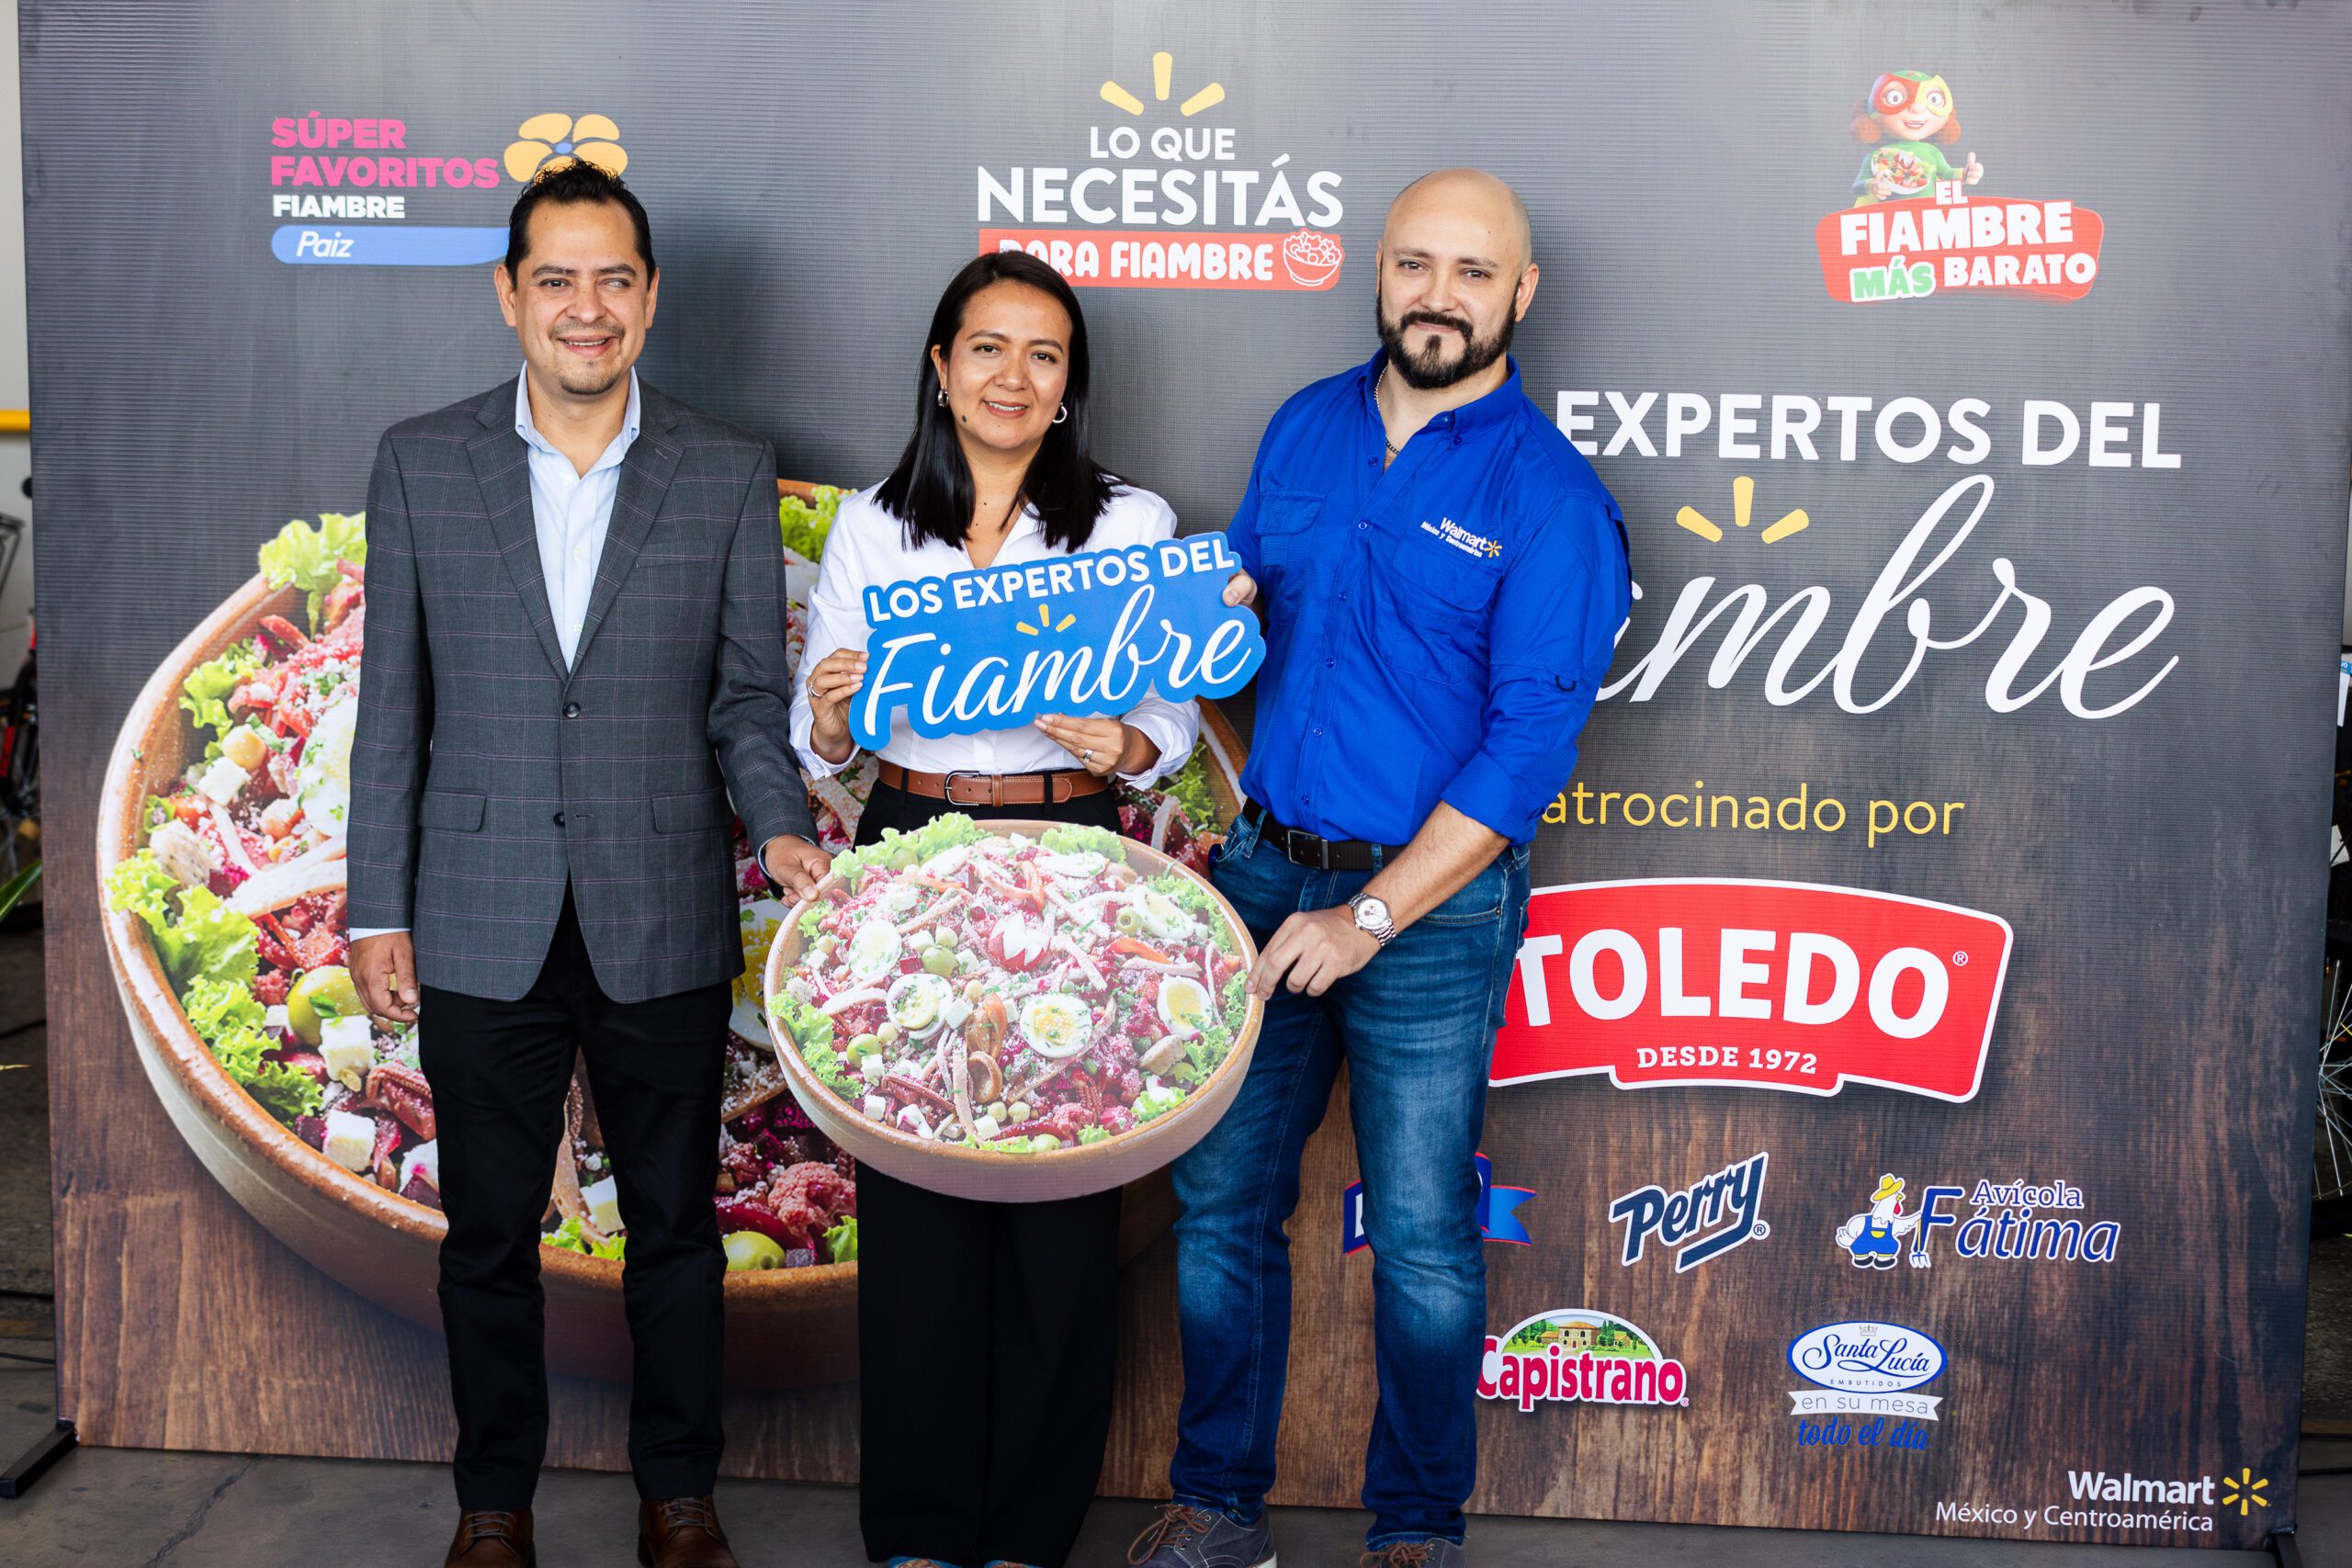 Walmart celebra el sabor y la tradición guatemalteca con el concurso “Los Expertos del Fiambre”